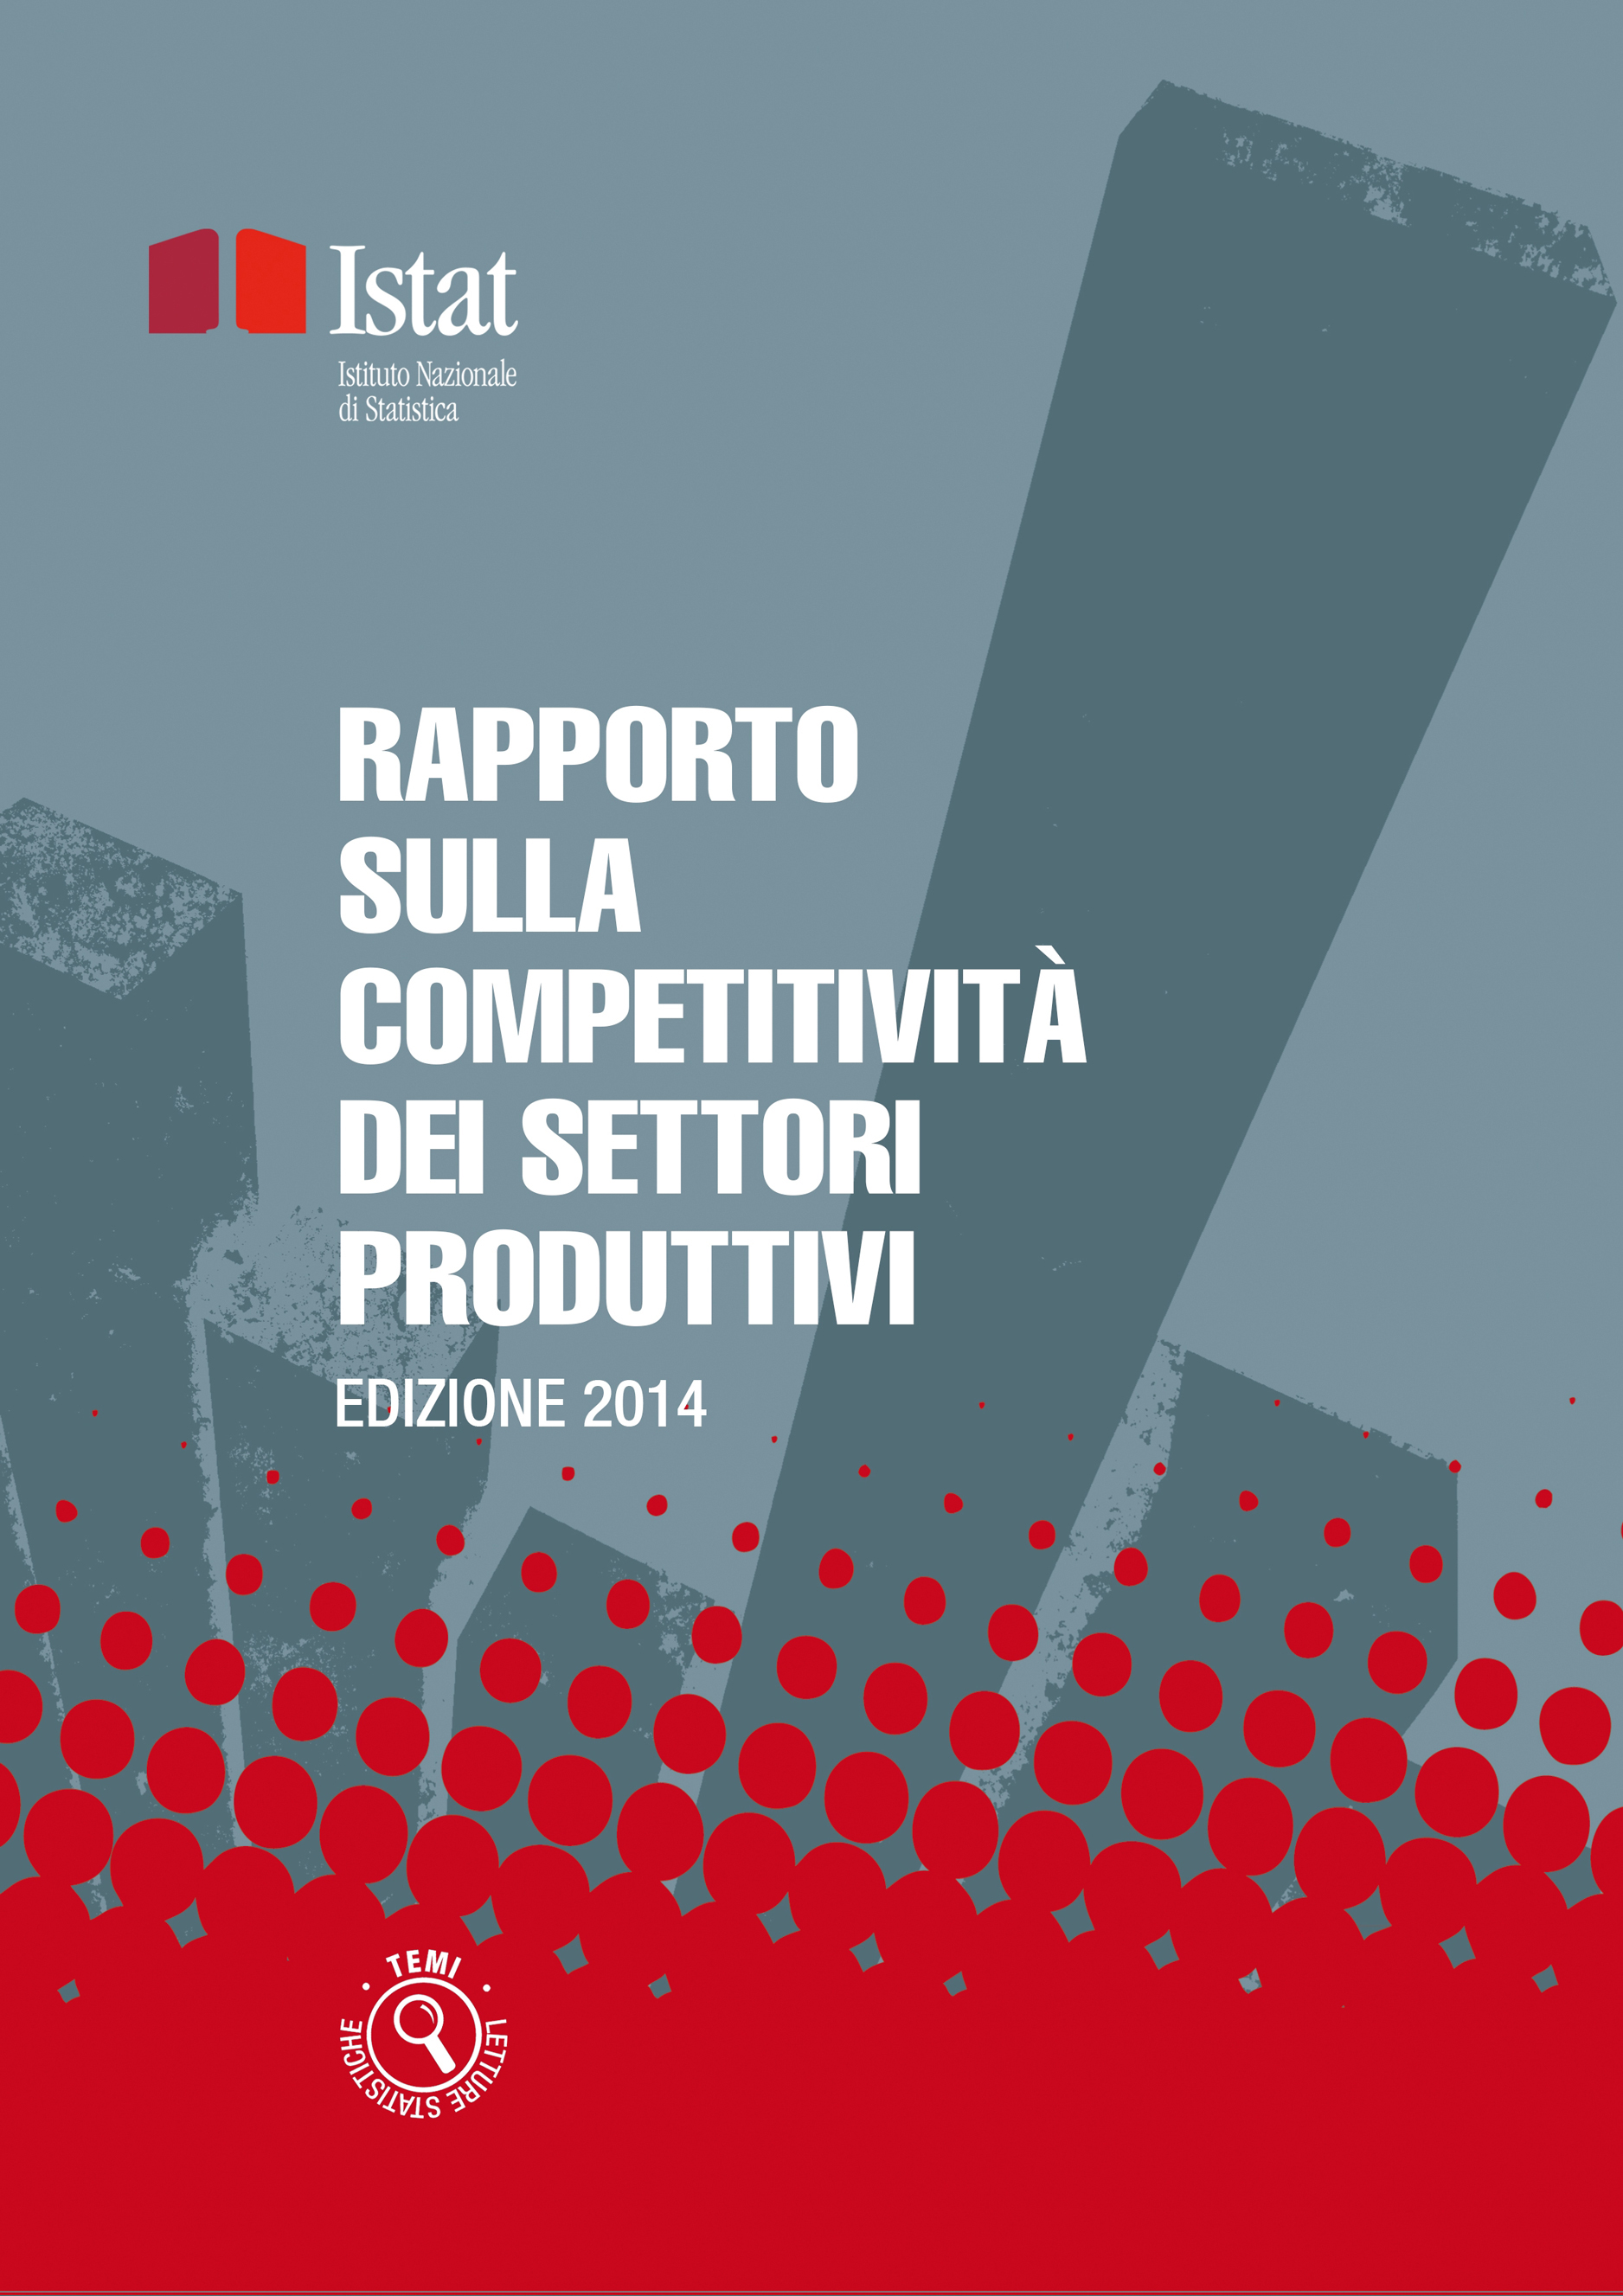 Copertina Rapporto competitività dei settori produttivi_2ed.